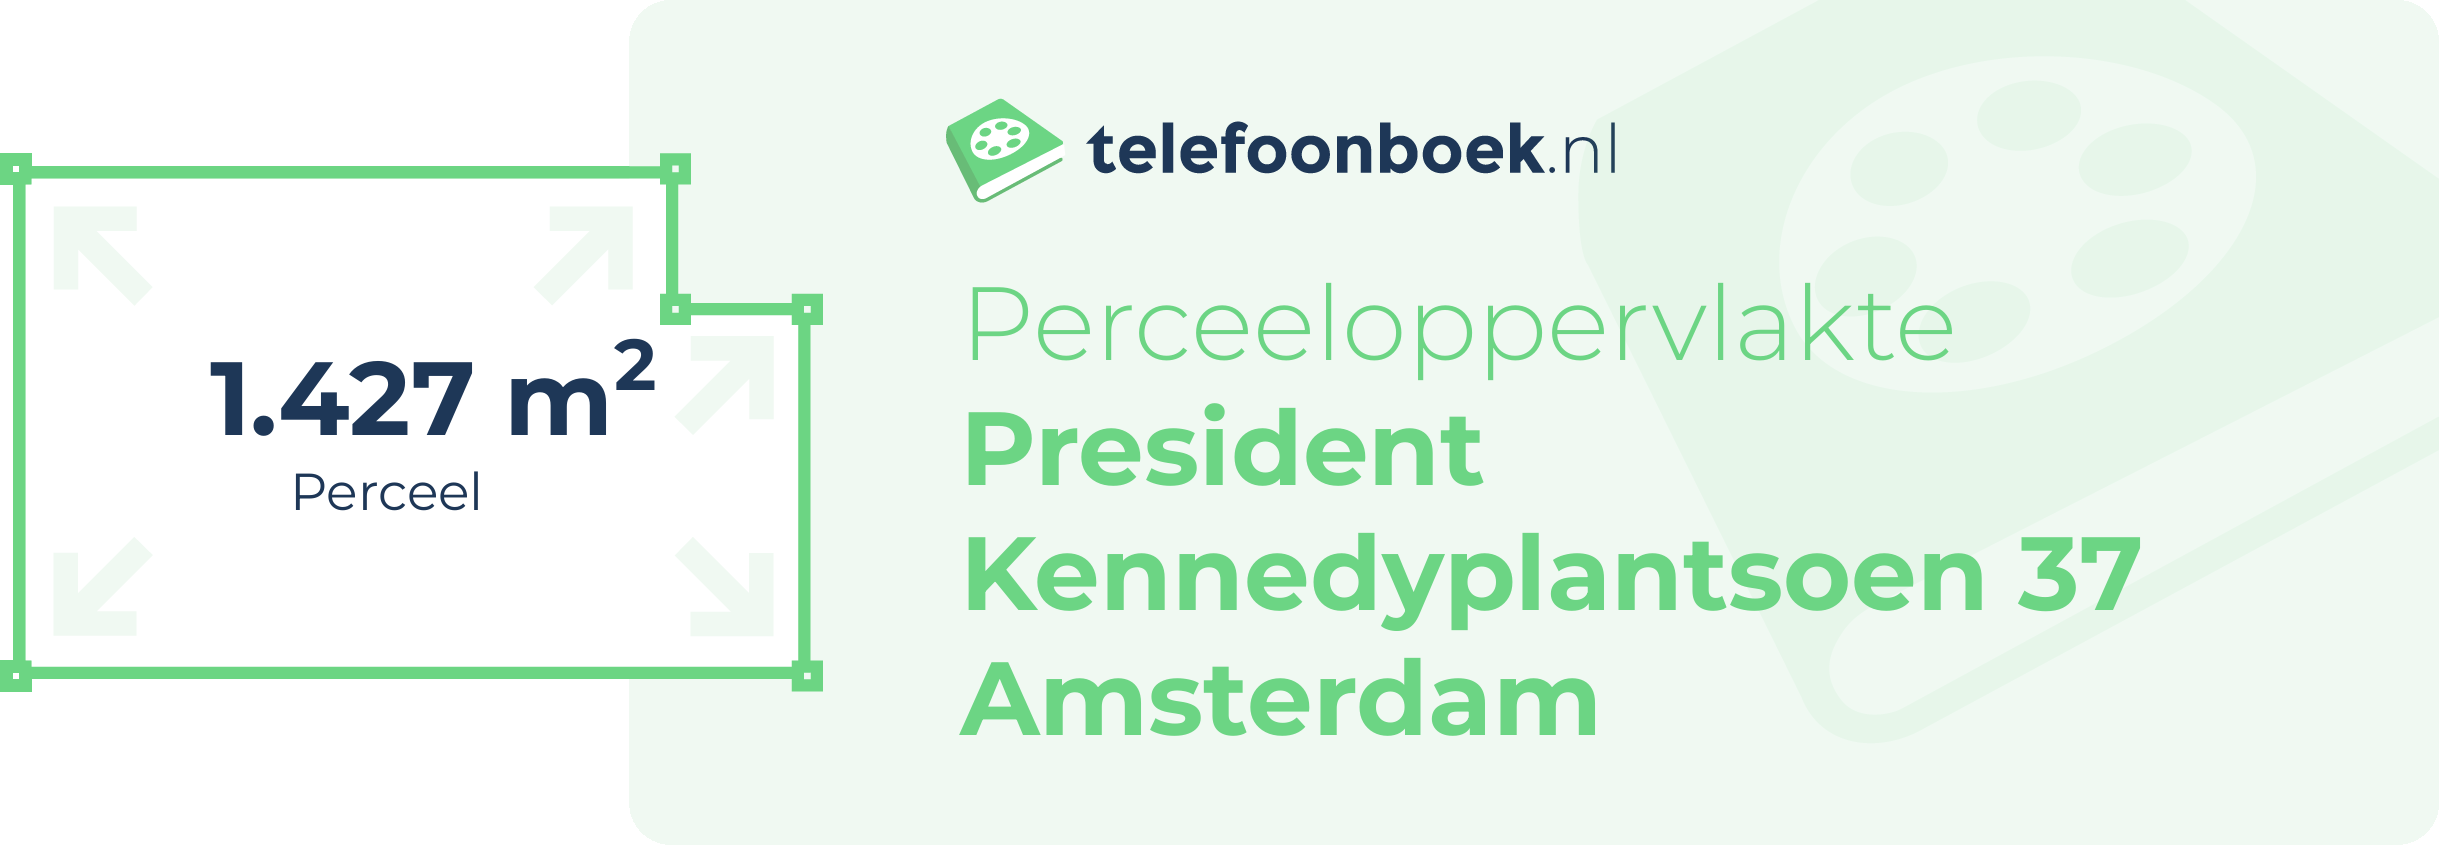 Perceeloppervlakte President Kennedyplantsoen 37 Amsterdam